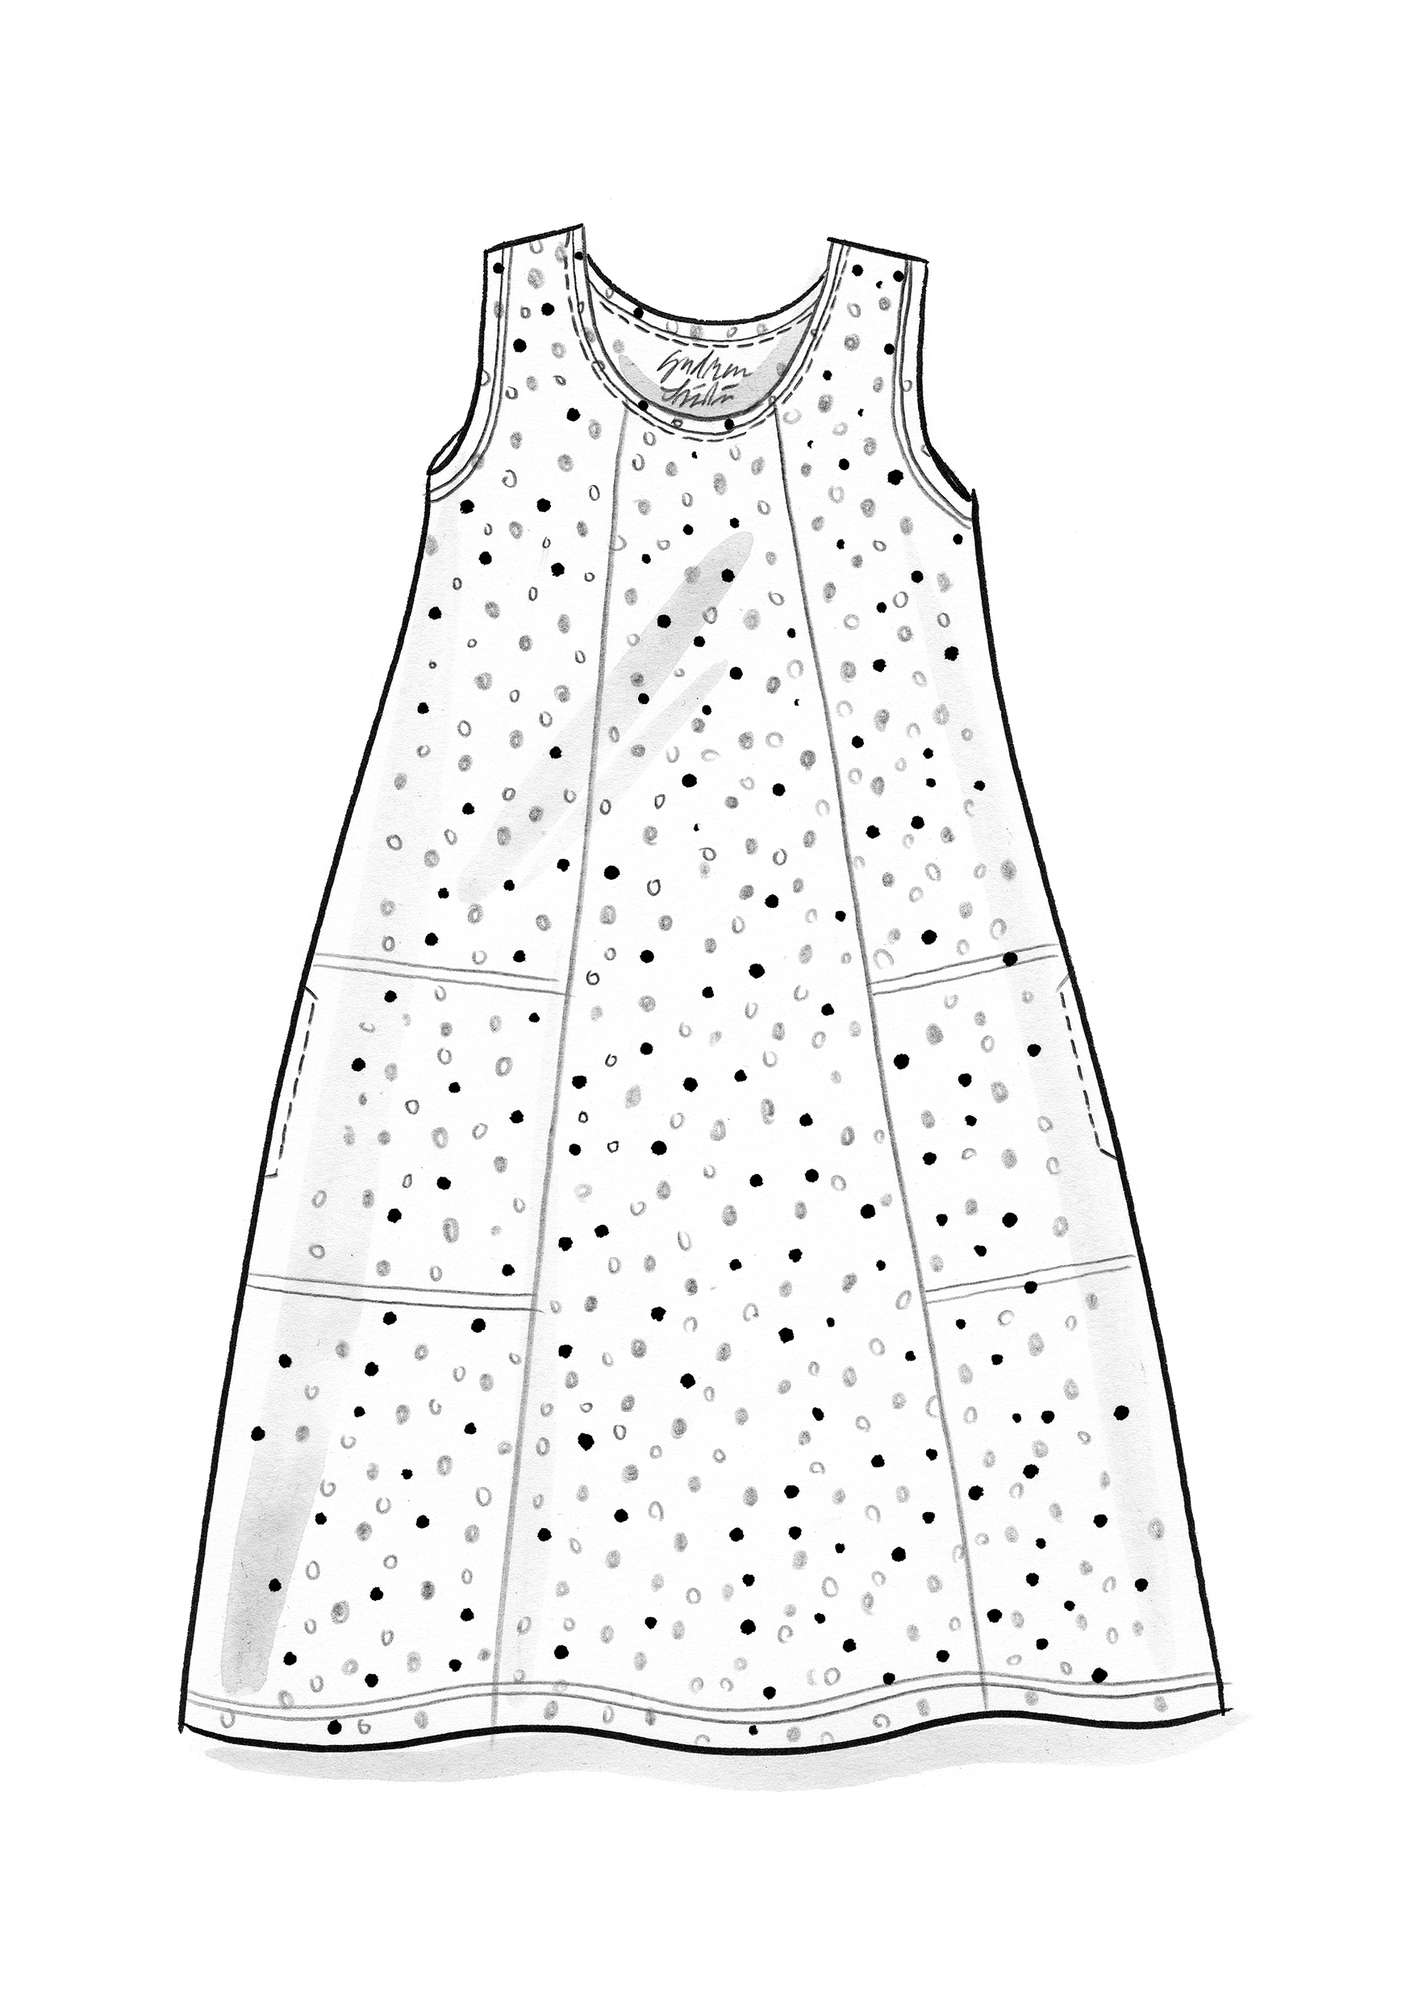 Trikåklänning  Iliana  i ekologisk bomull/elastan lavendel/mönstrad